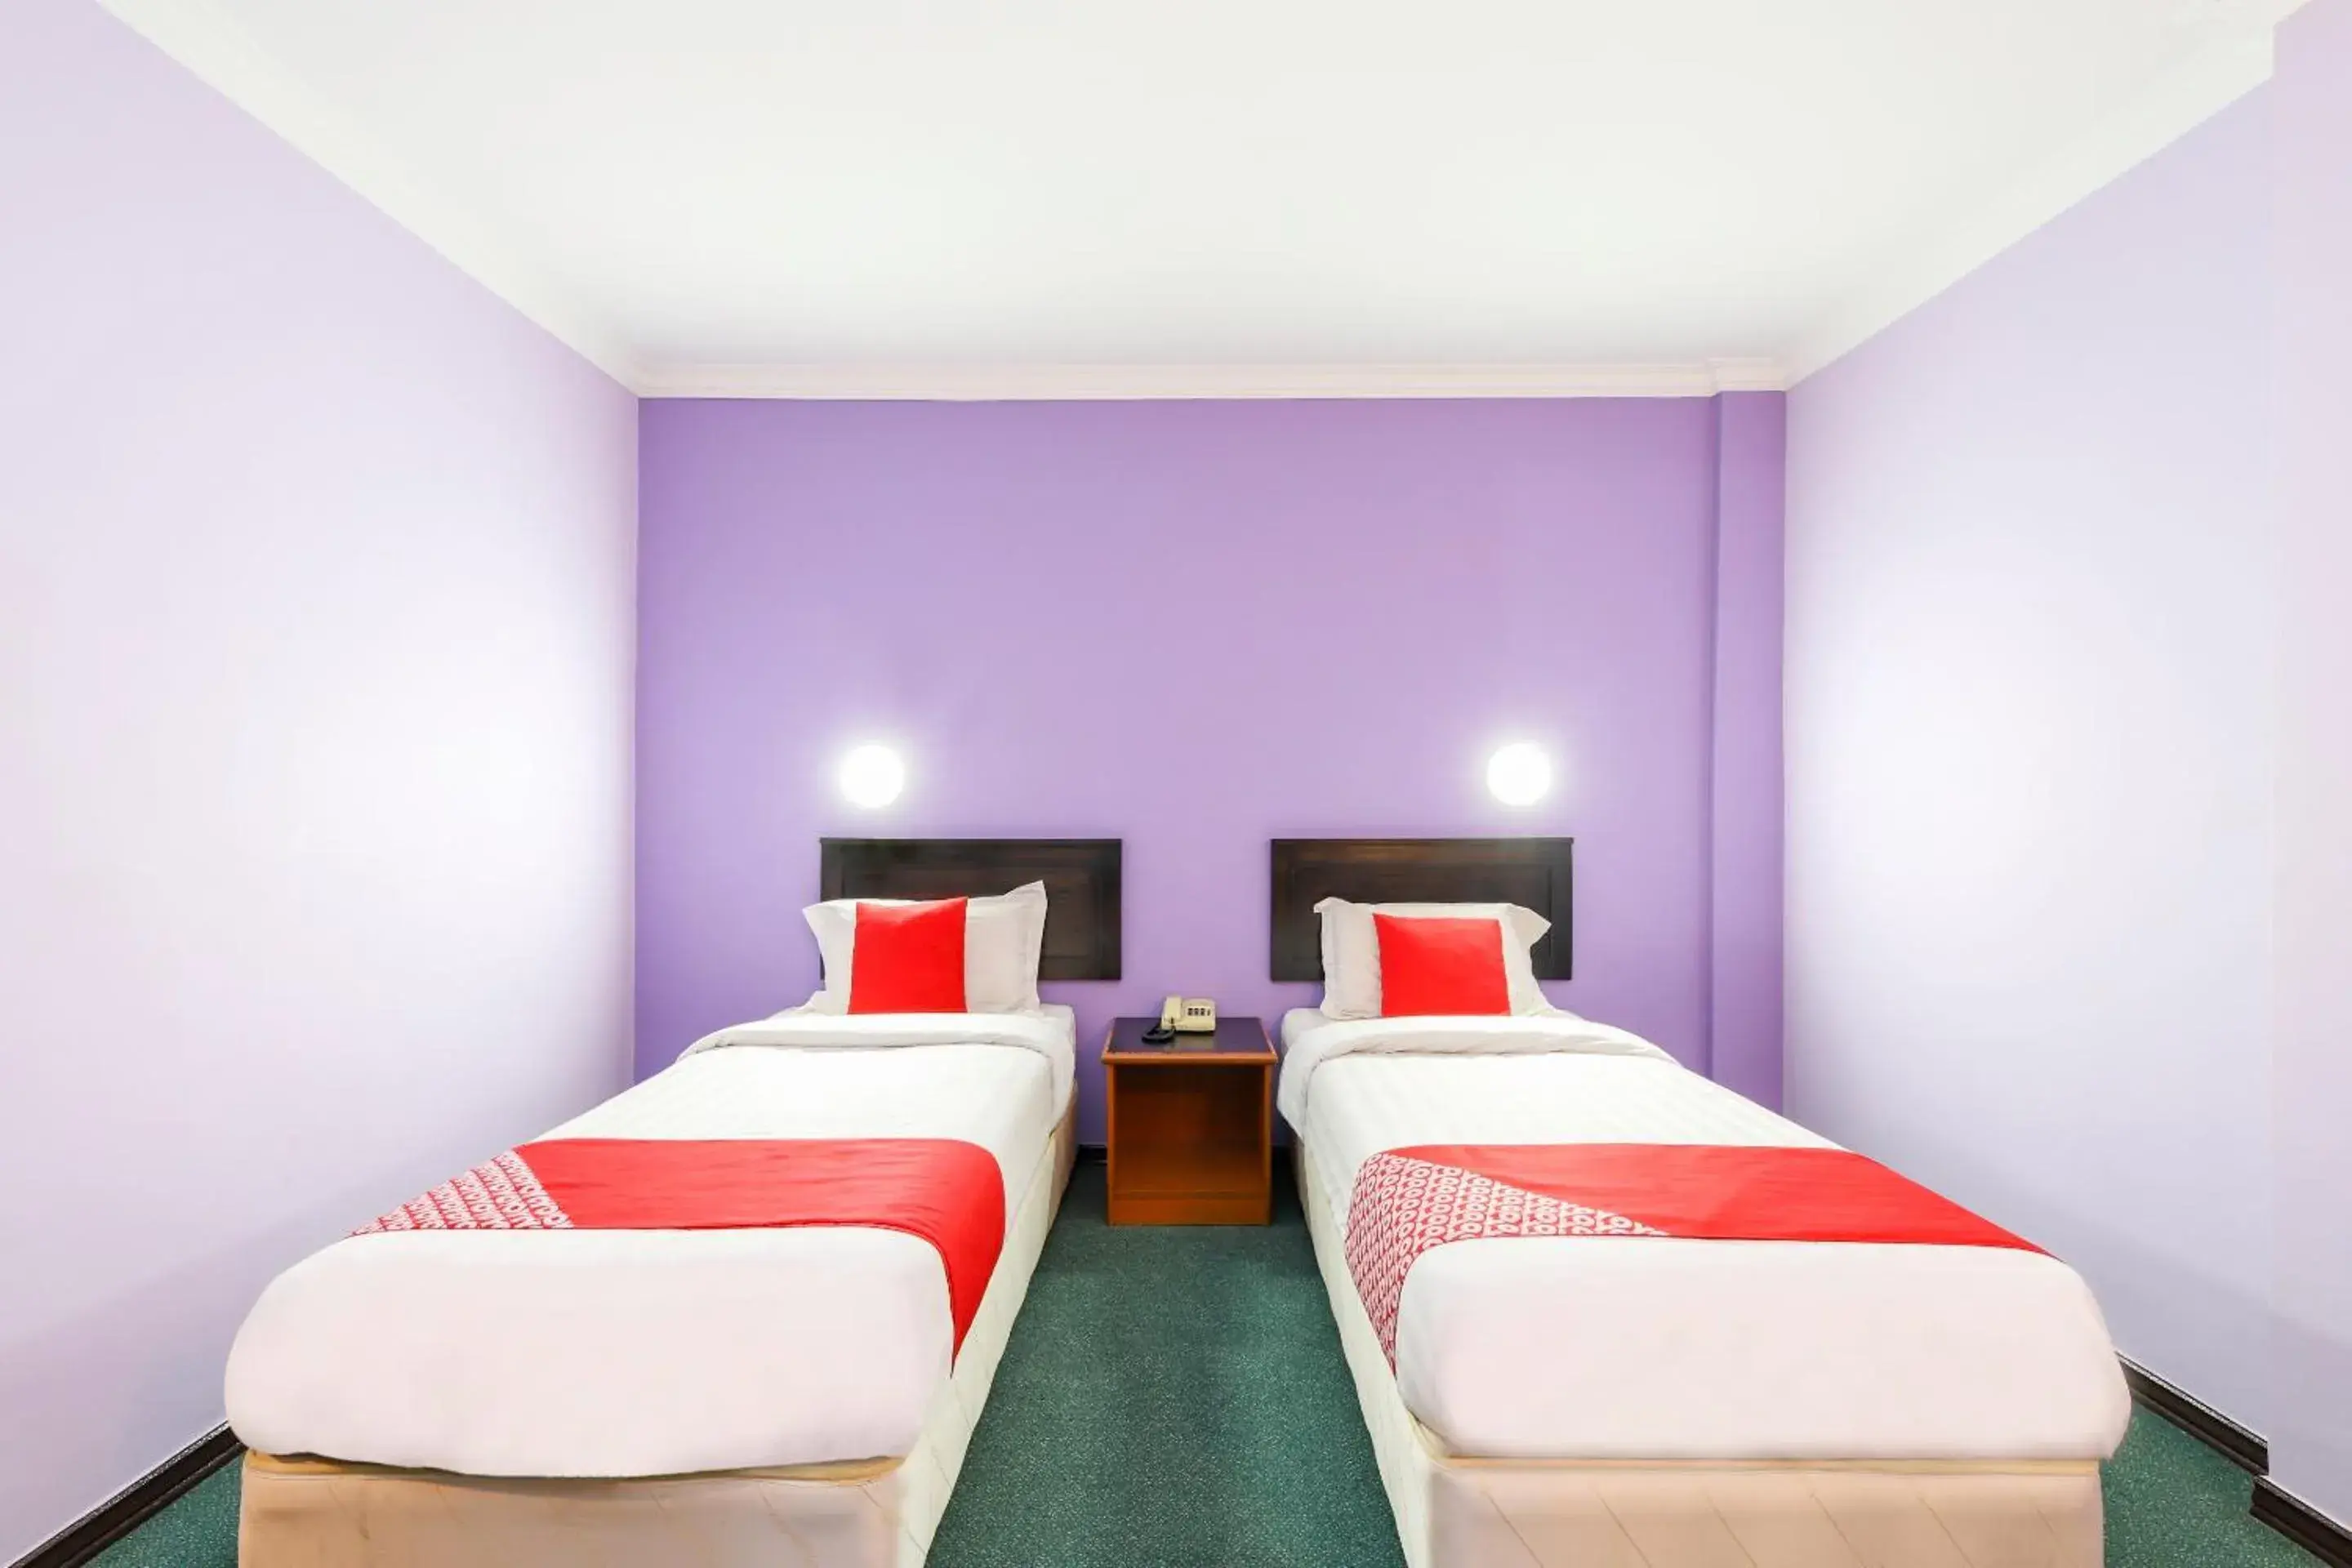 Bedroom in OYO 472 Comfort Hotel 1